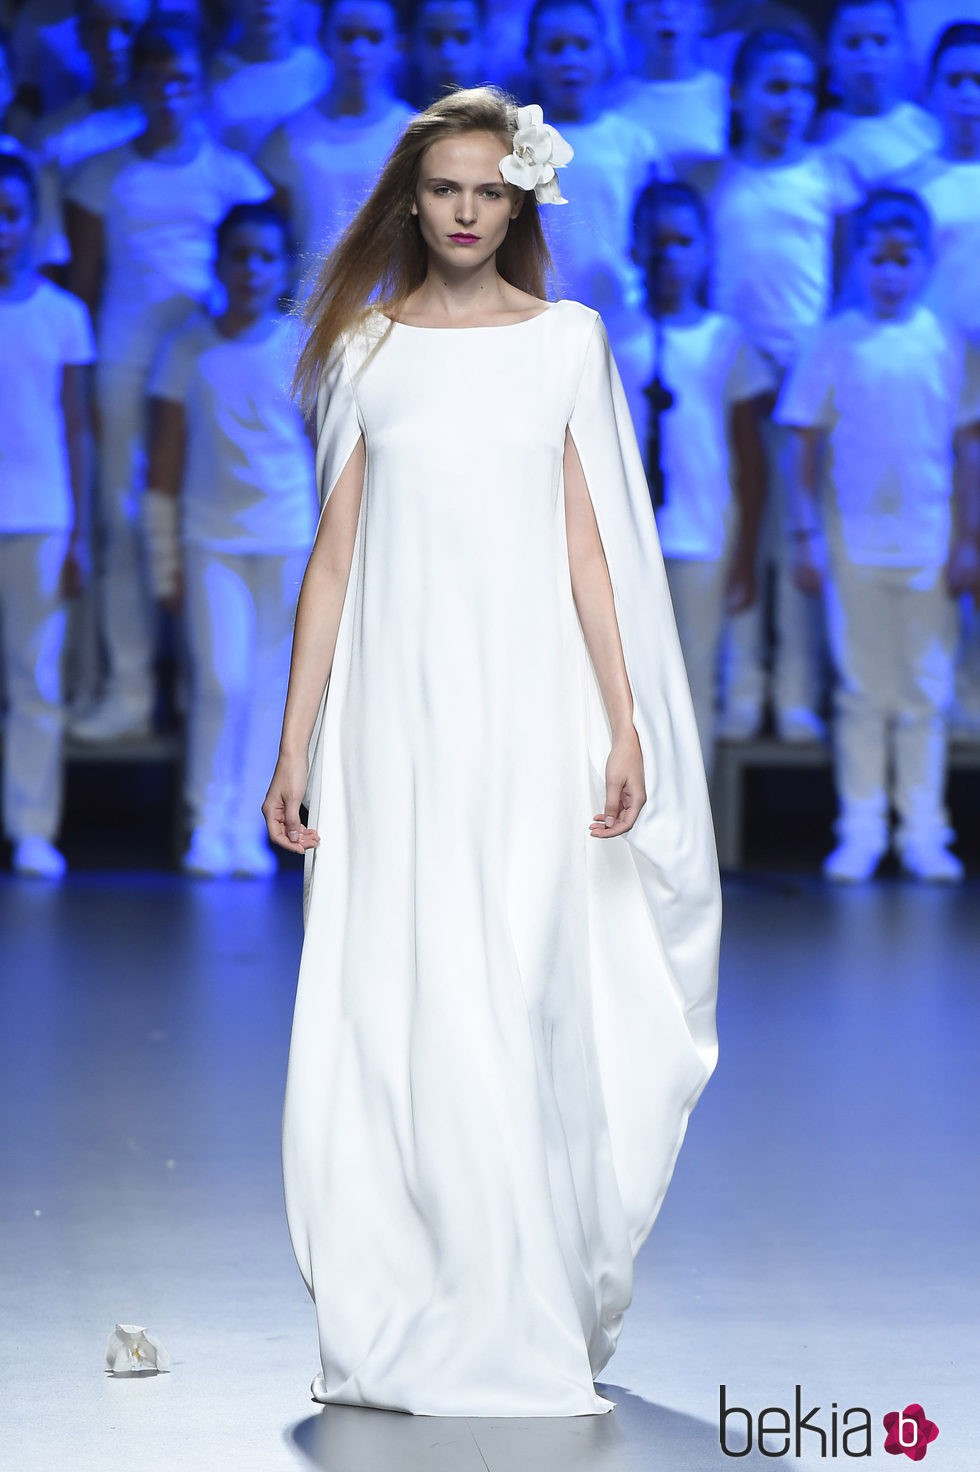 Vestido blanco largo de Duyos para primavera/verano 2015 en Madrid Fashion Week